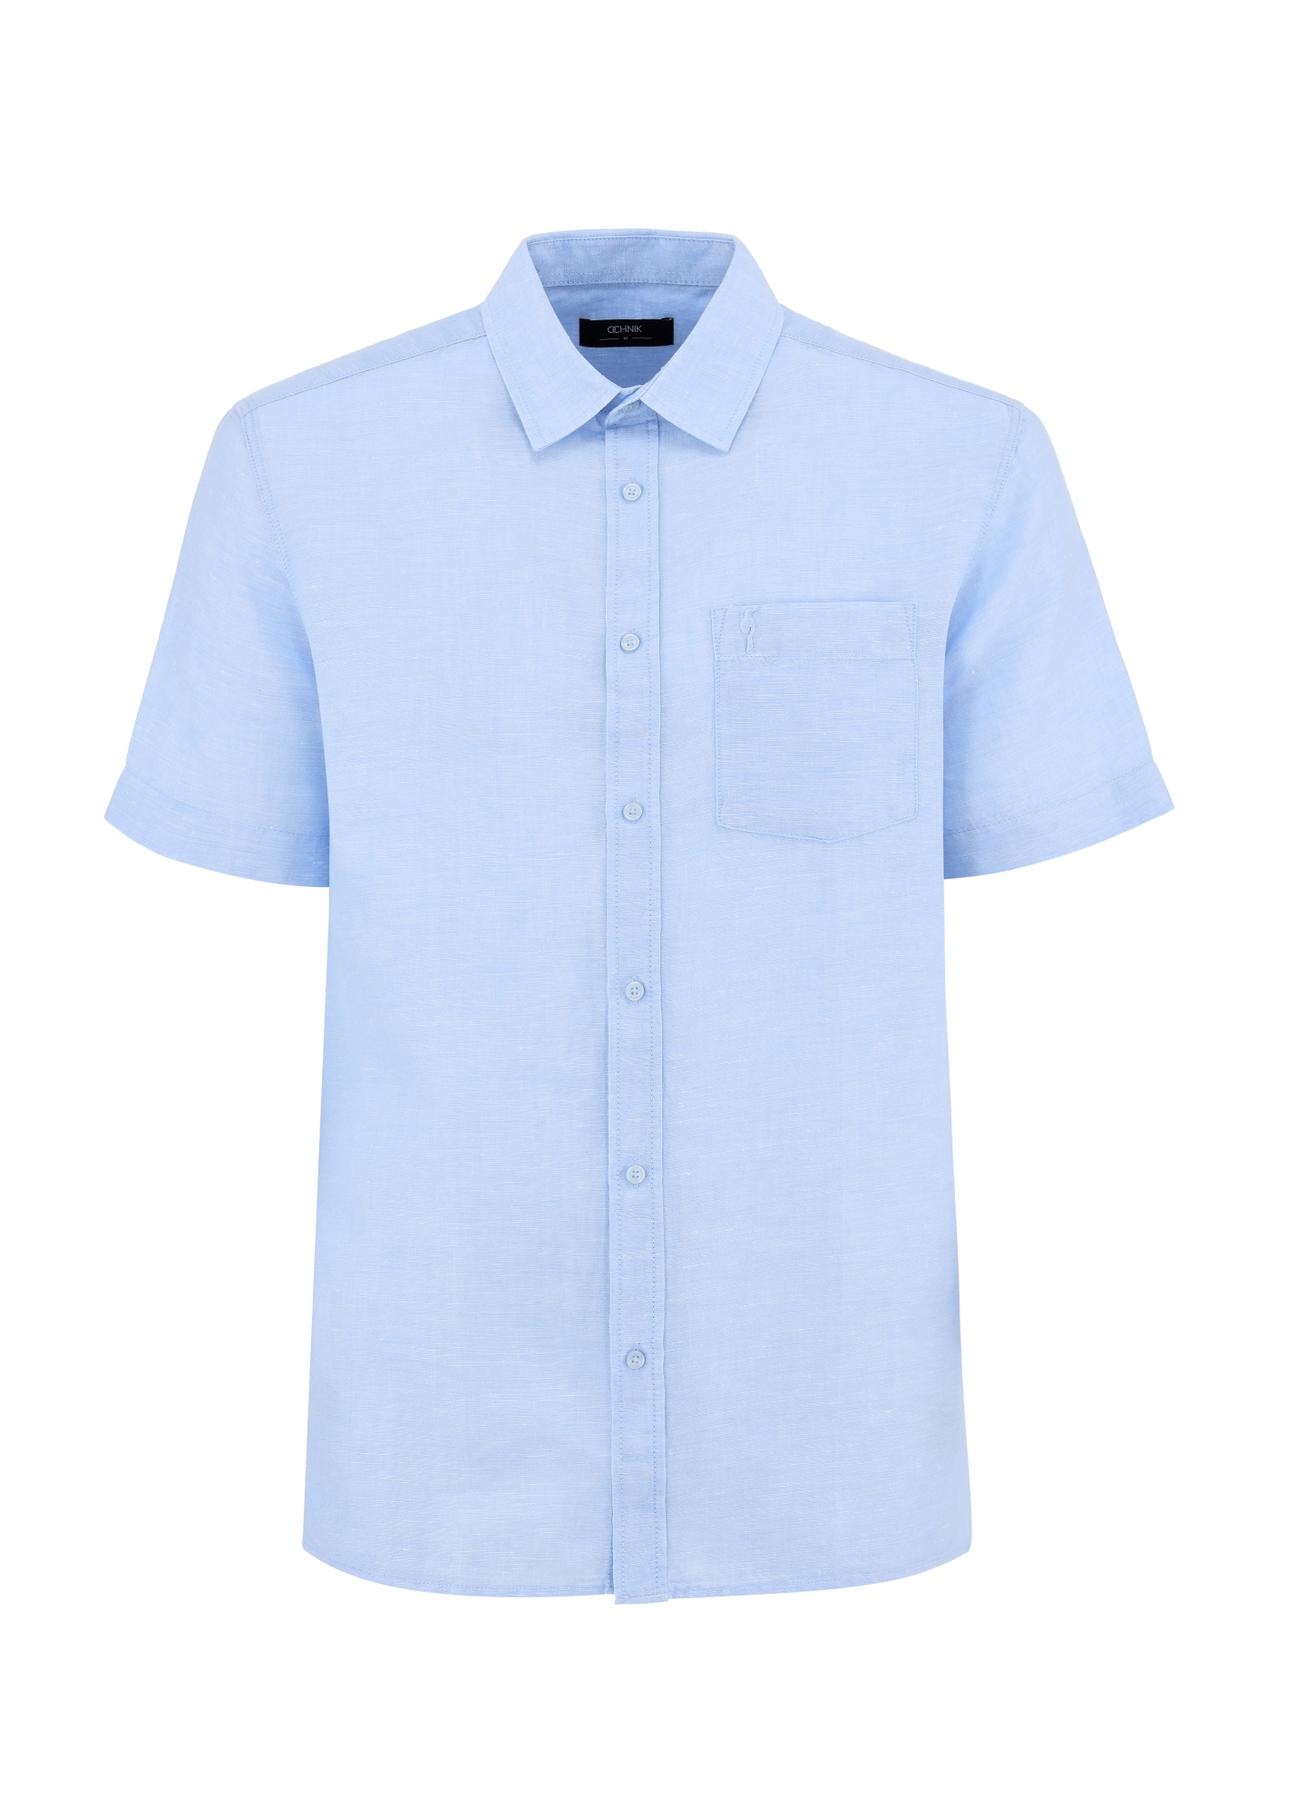 Błękitna koszula z krótkim rękawem męska KOSMT-0327-62(W24)